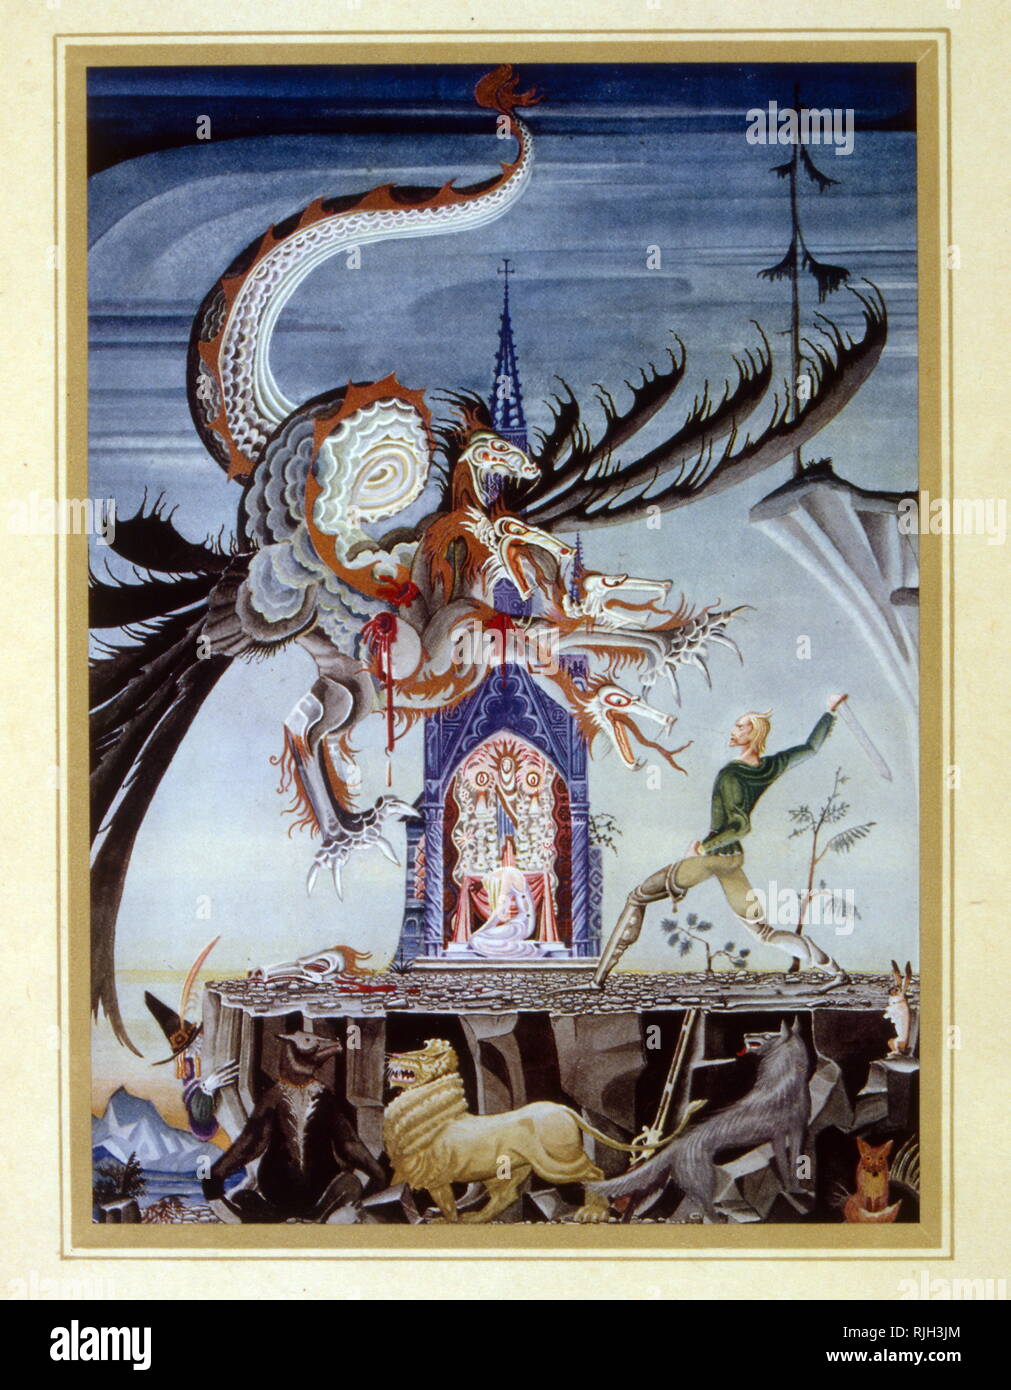 Le Seven-Headed Dragon, Conte de Jacob et Wilhelm Grimm. Illustration par Kay Nielsen, 1925 Banque D'Images